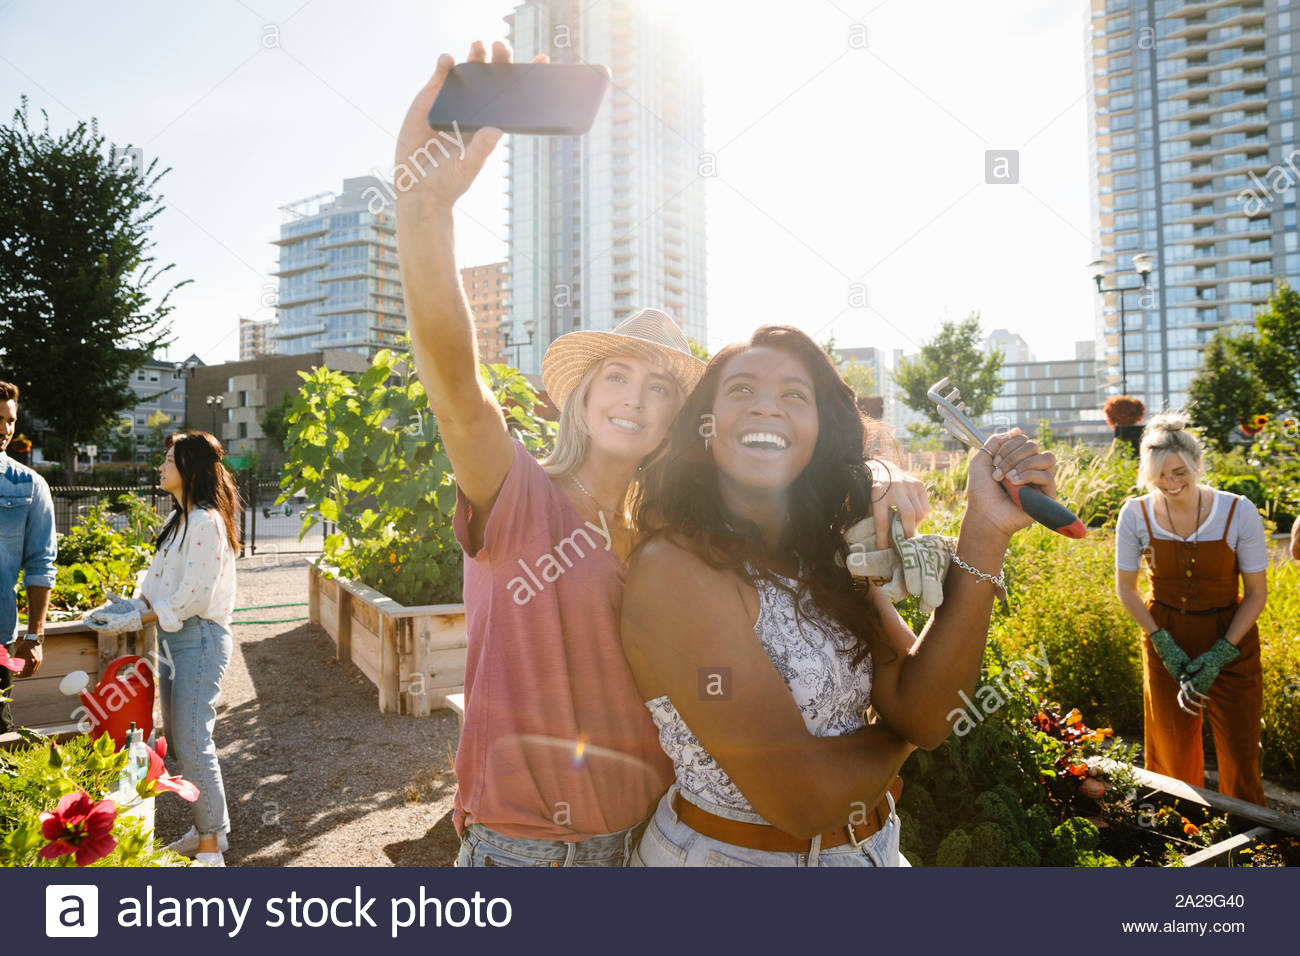 Glückliche, selbstbewusste junge Frauen Freunde unter selfie mit Kamera Handy in sonniger, städtischen Gemeinschaft garten Stockfoto